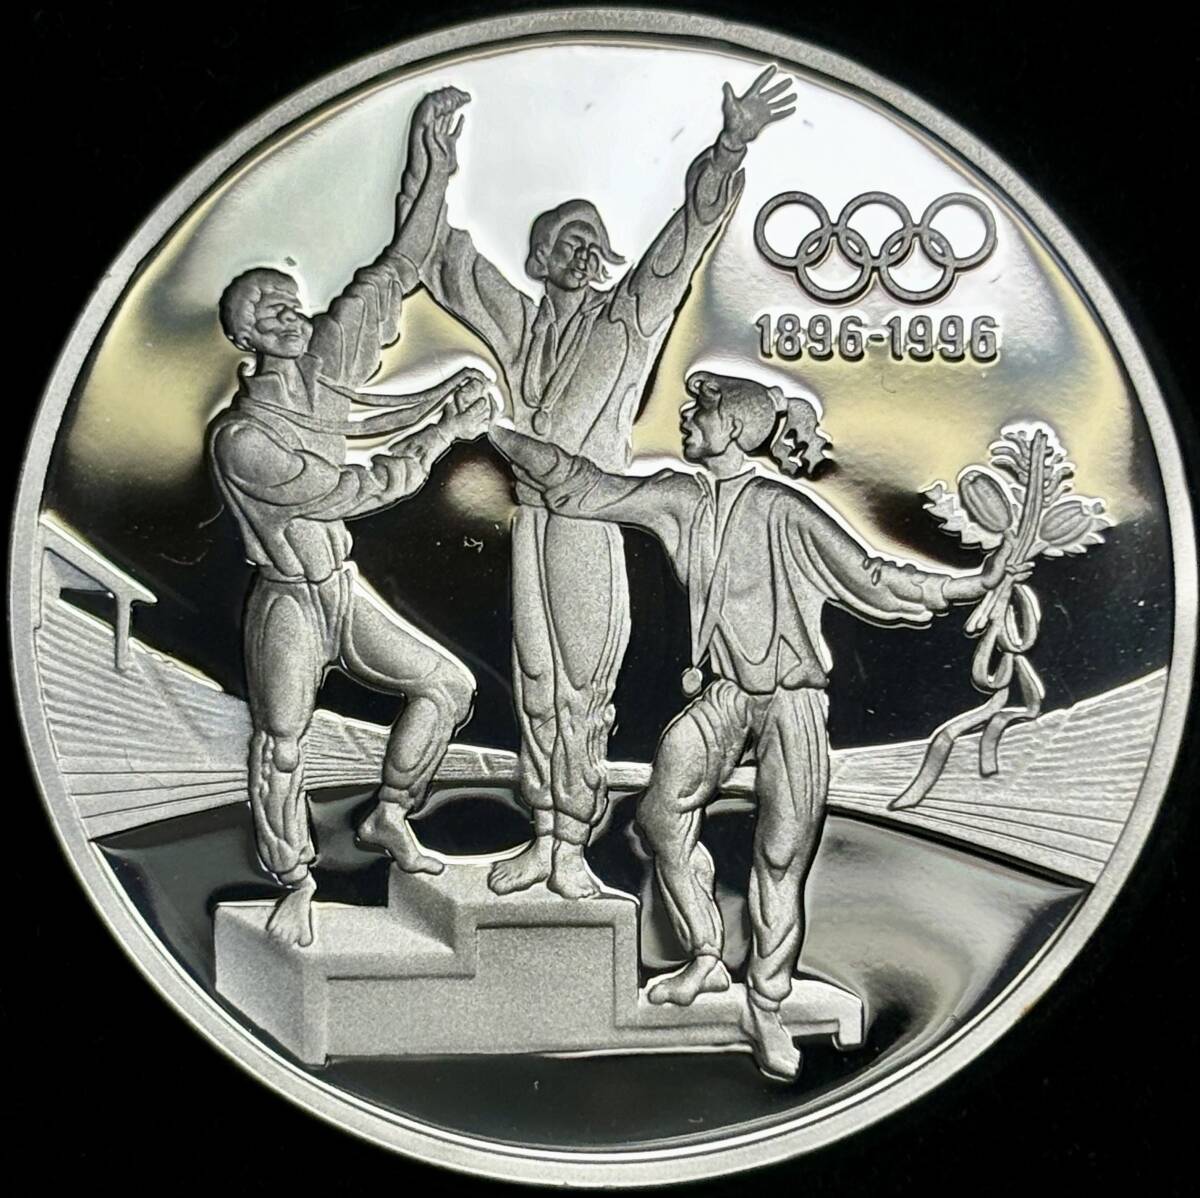 【オリンピック百年記念-大型銀貨】(オーストラリア発行 34.0g 直径40mm 1993年銘 プルーフ)